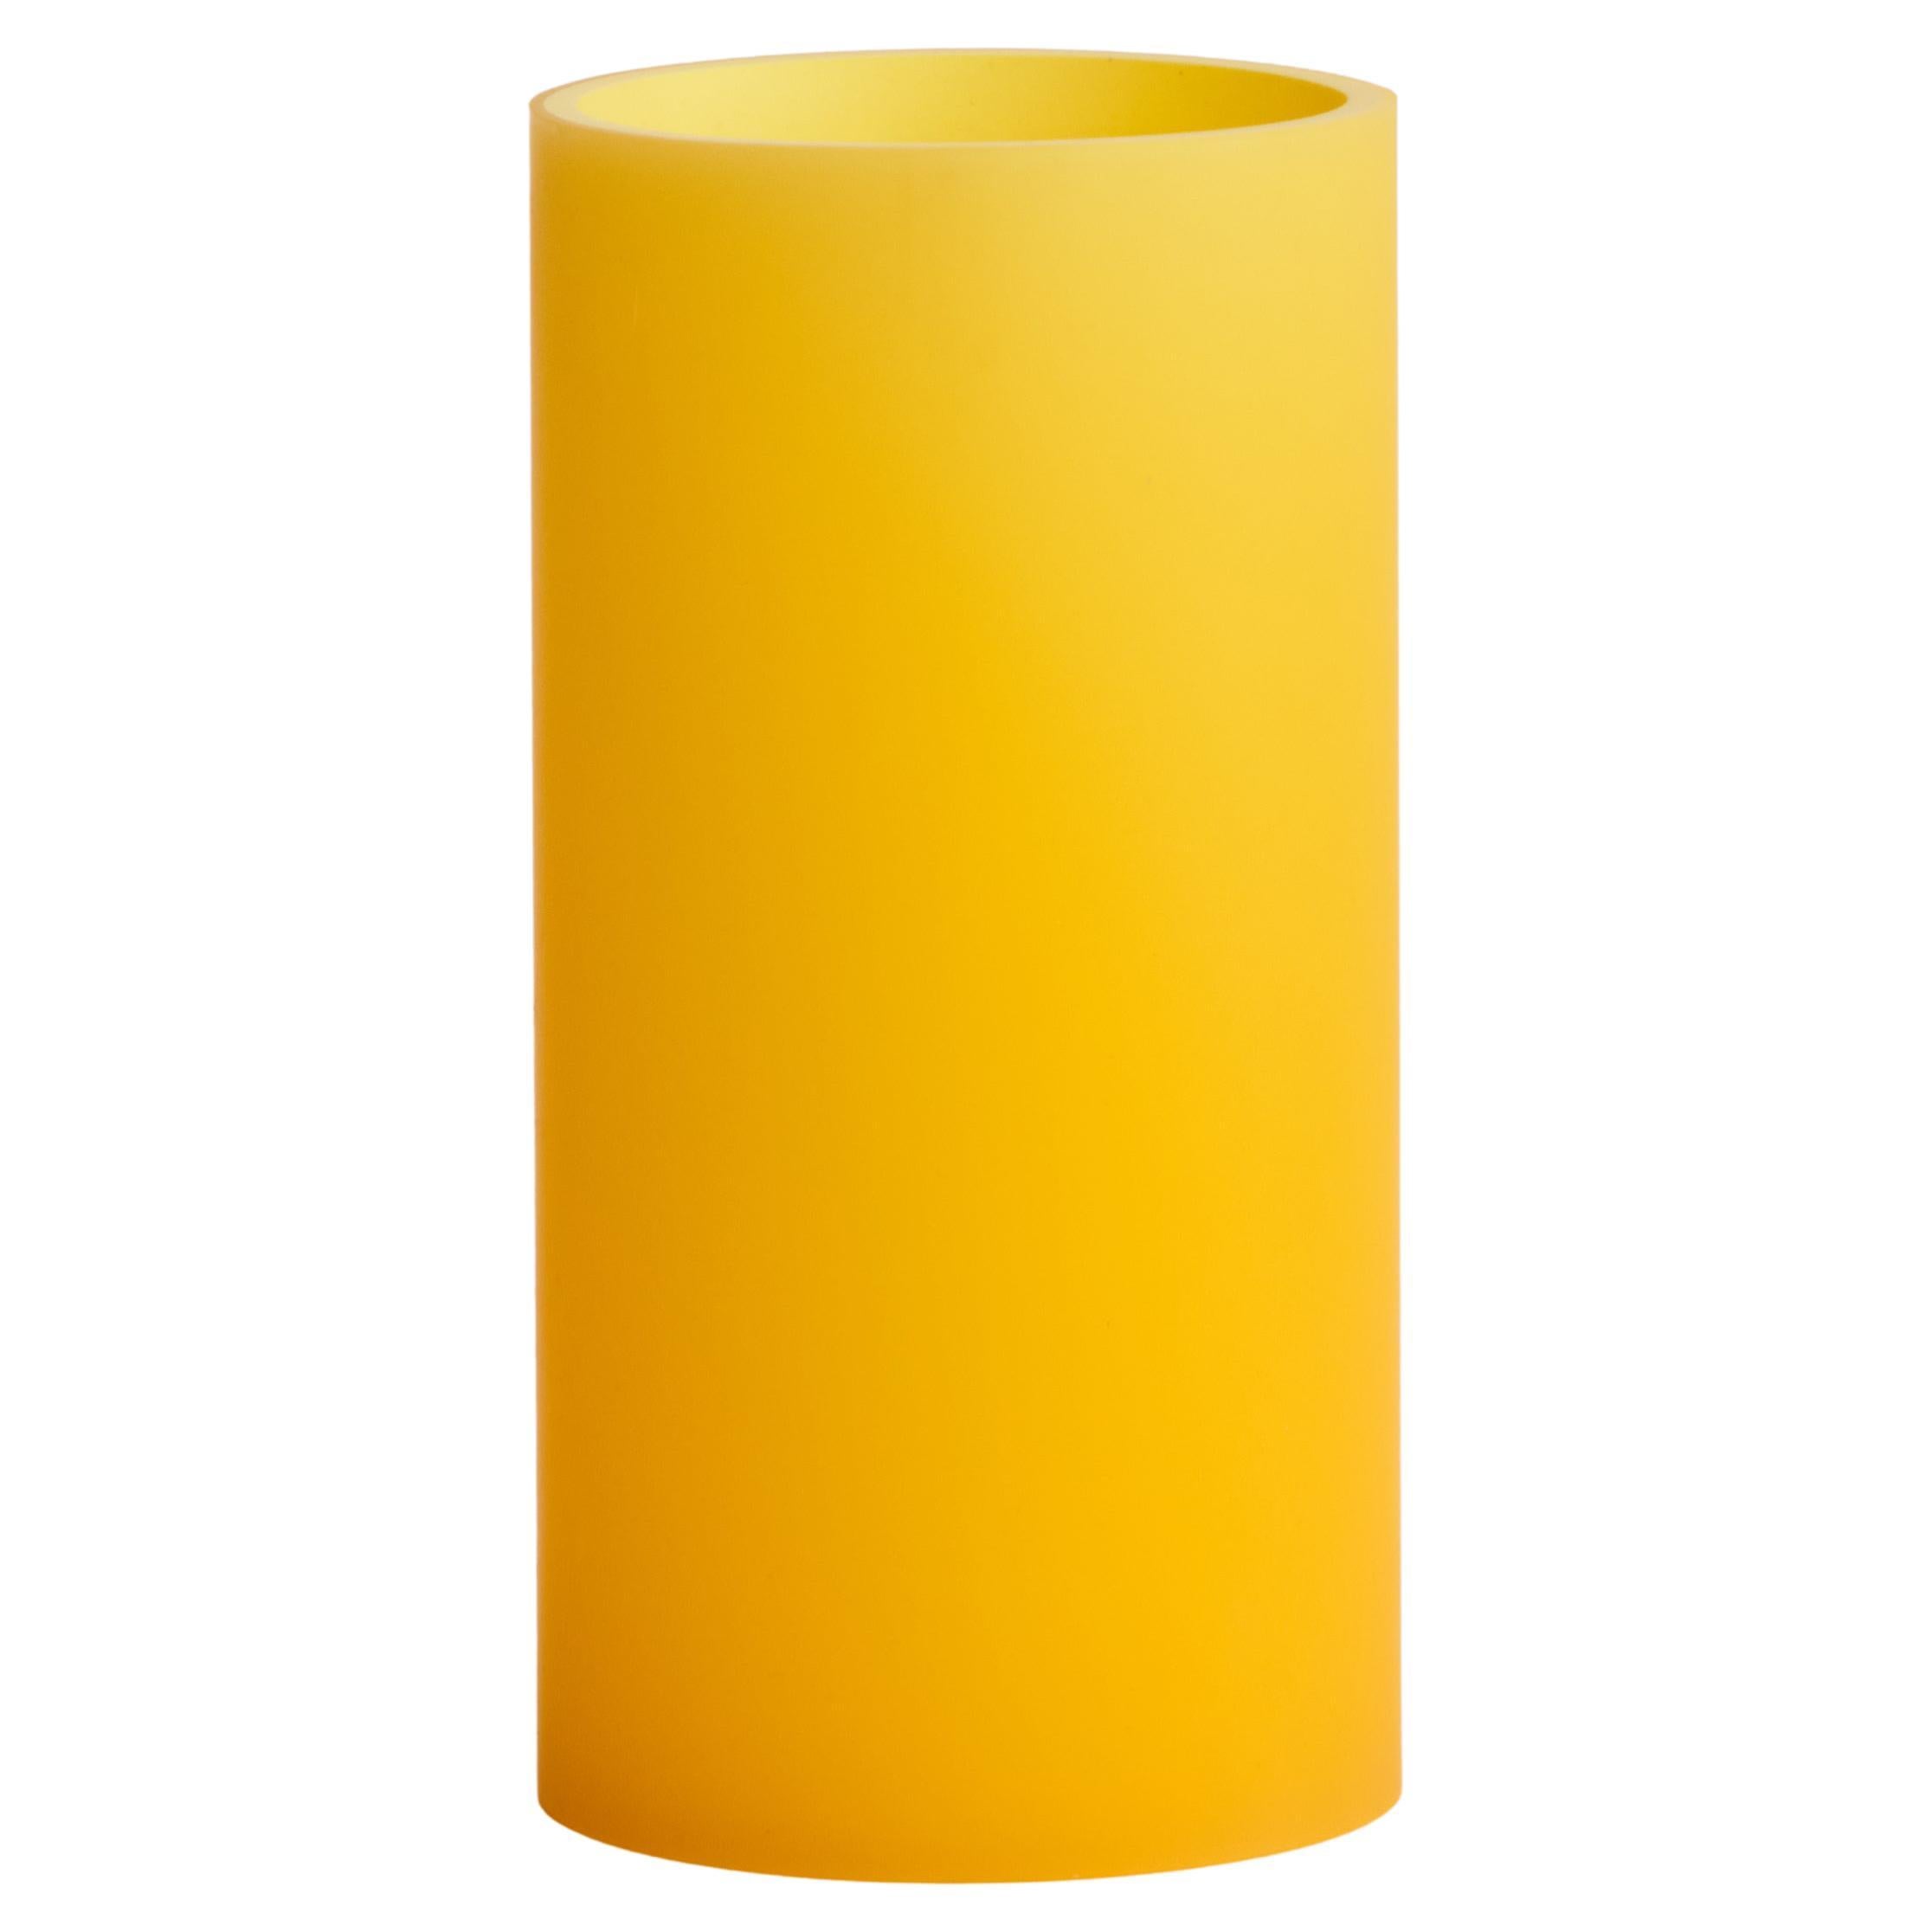 Vase/décor jaune Meld en résine cylindrique, REP par Tuleste Factory